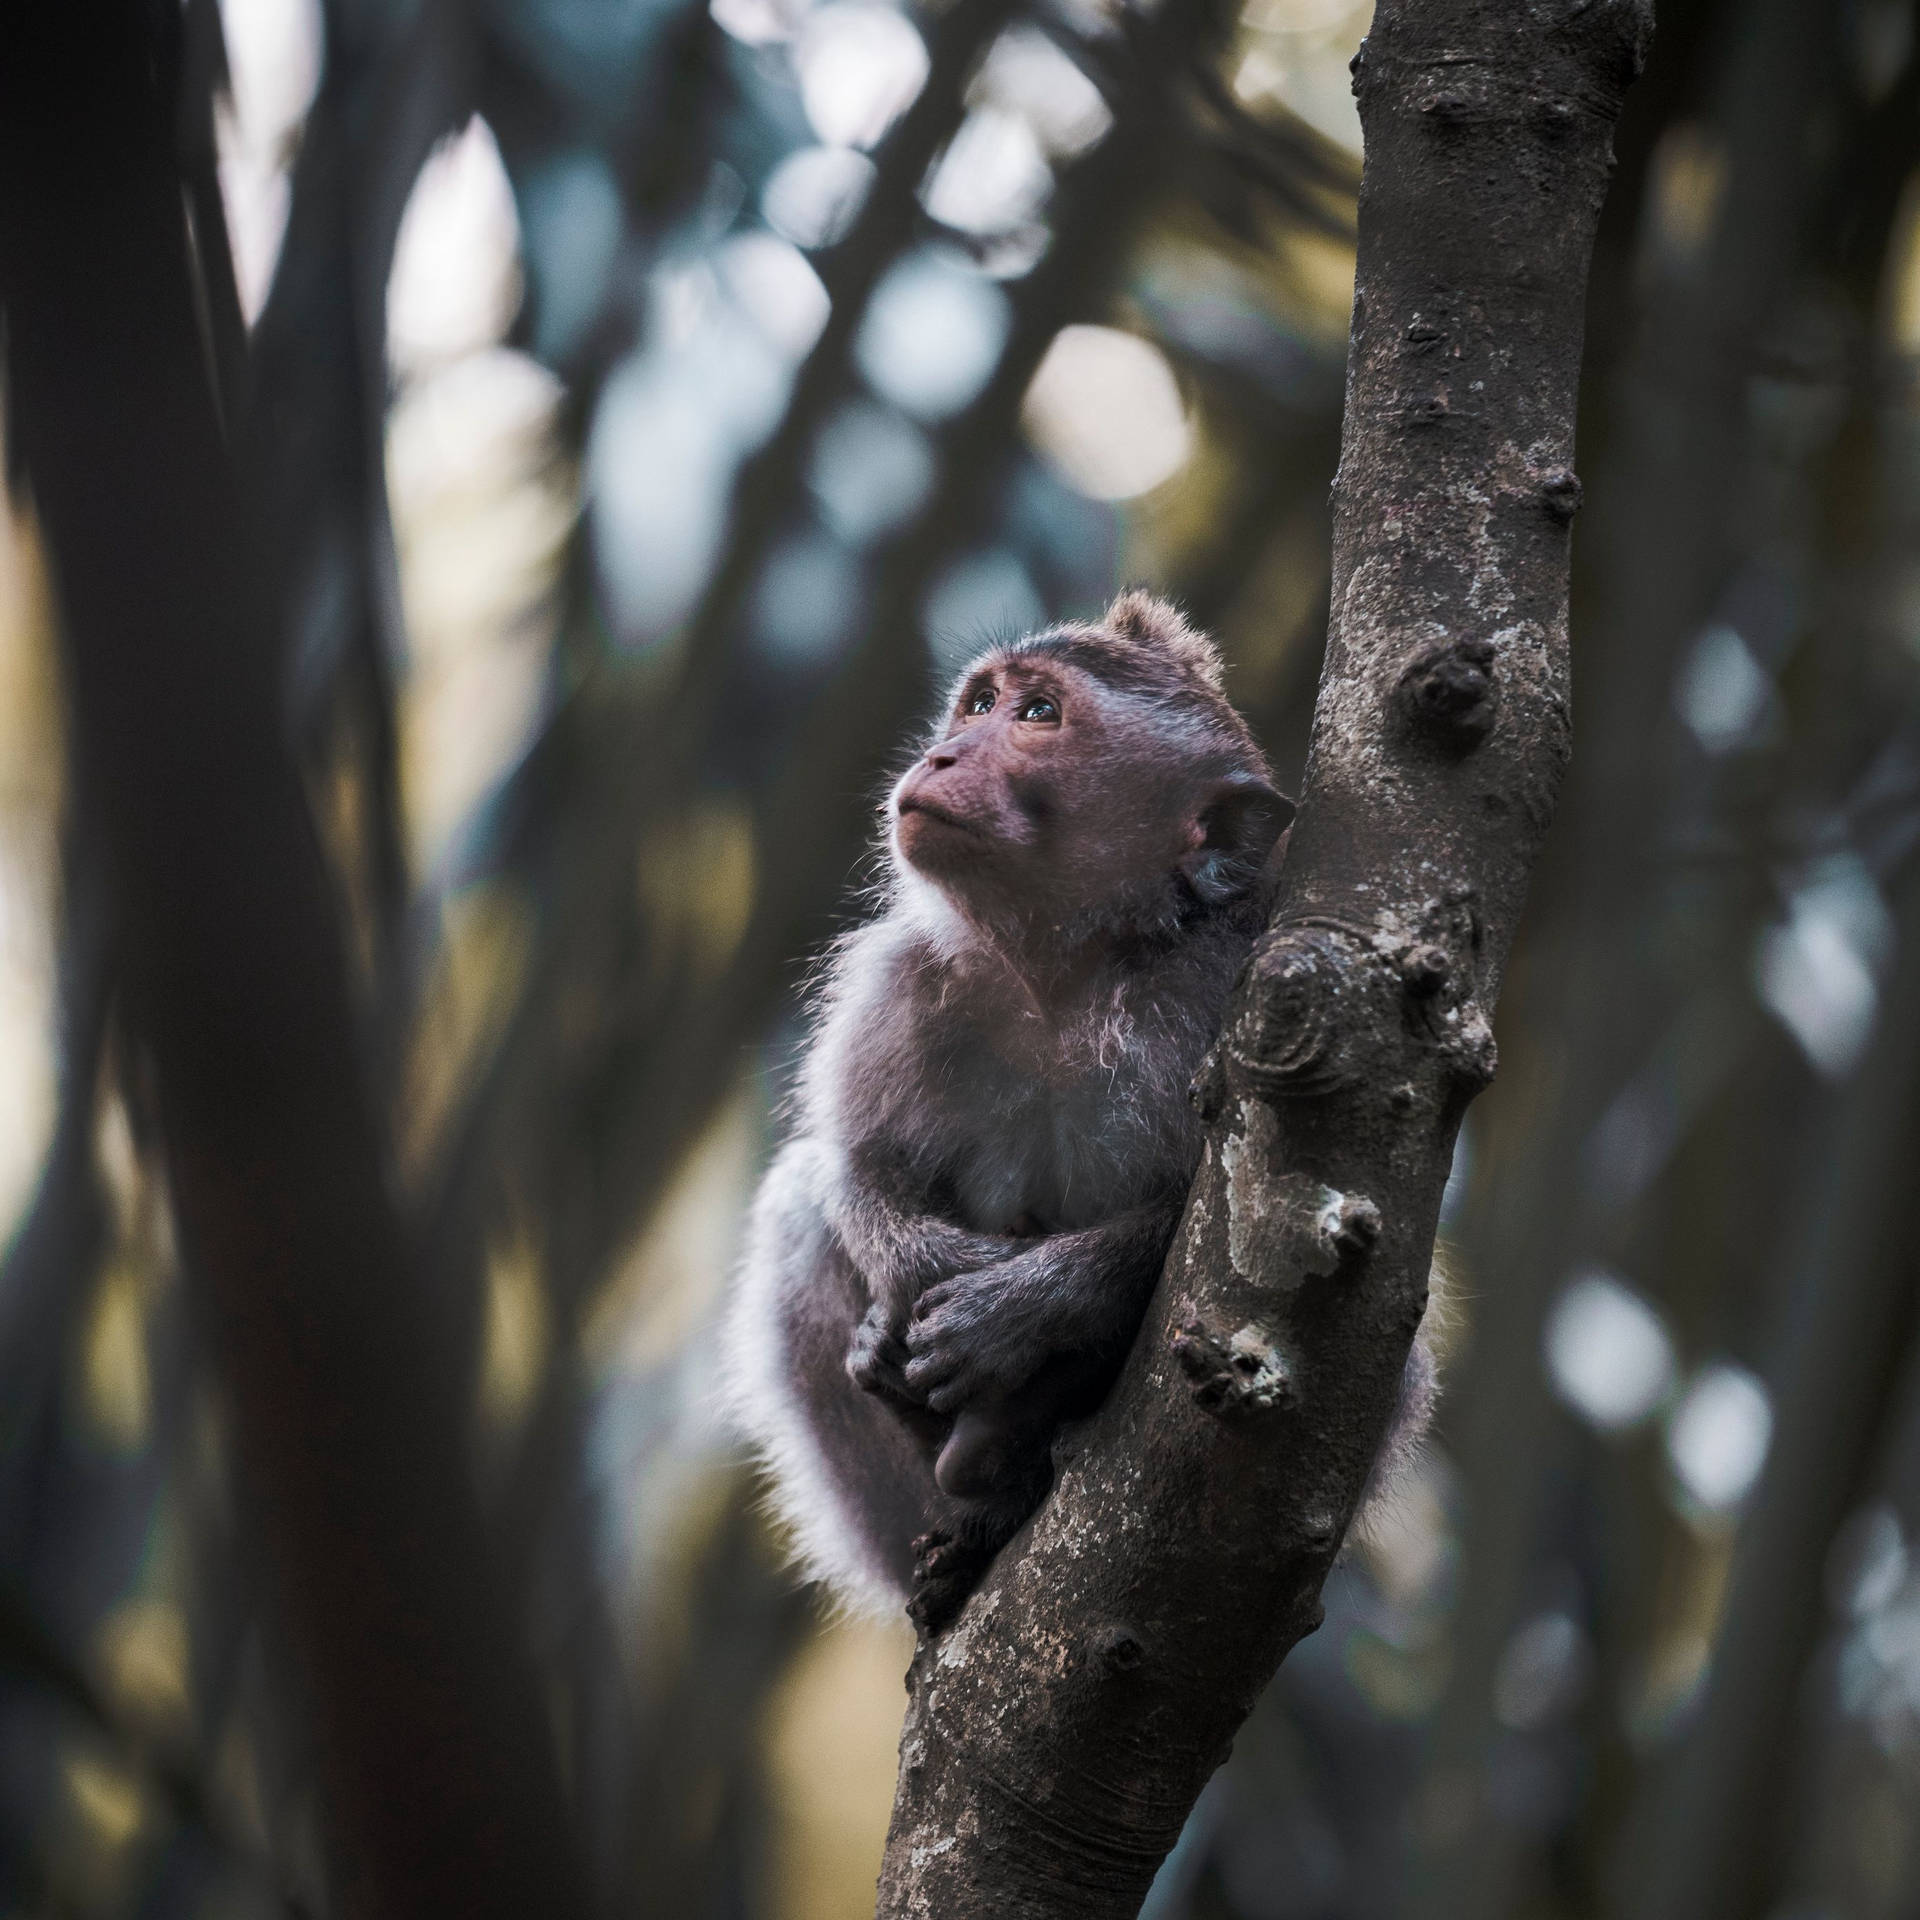 Cute Monkey On Tree Branch Wallpaper